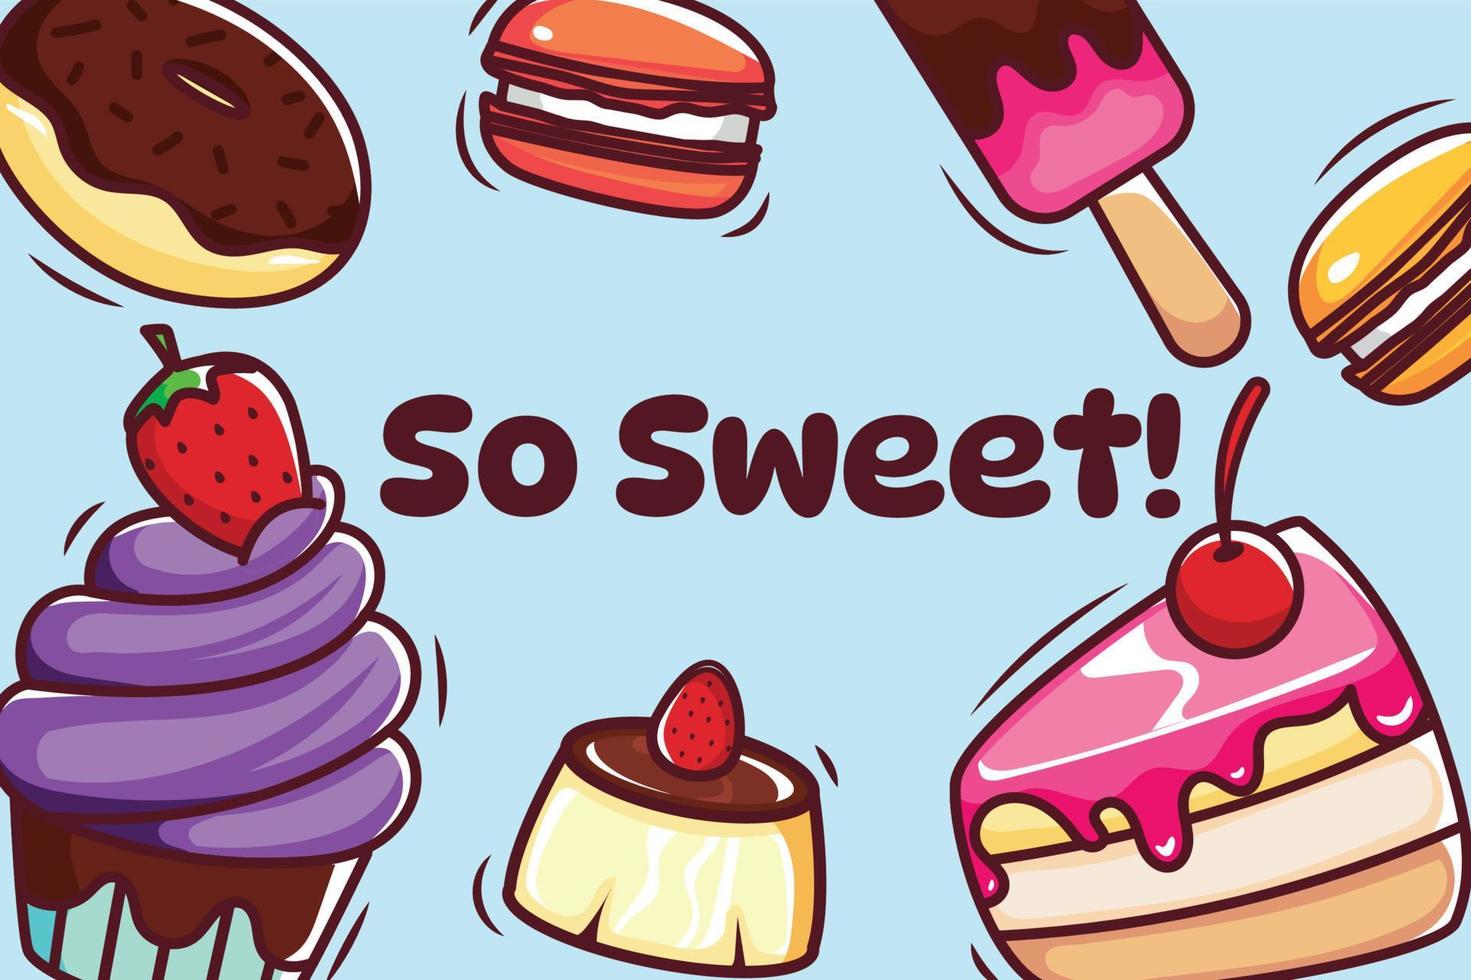 ilustração de comida doce com pudim e bolo de cupcake de macaron de sorvete de donut vetor